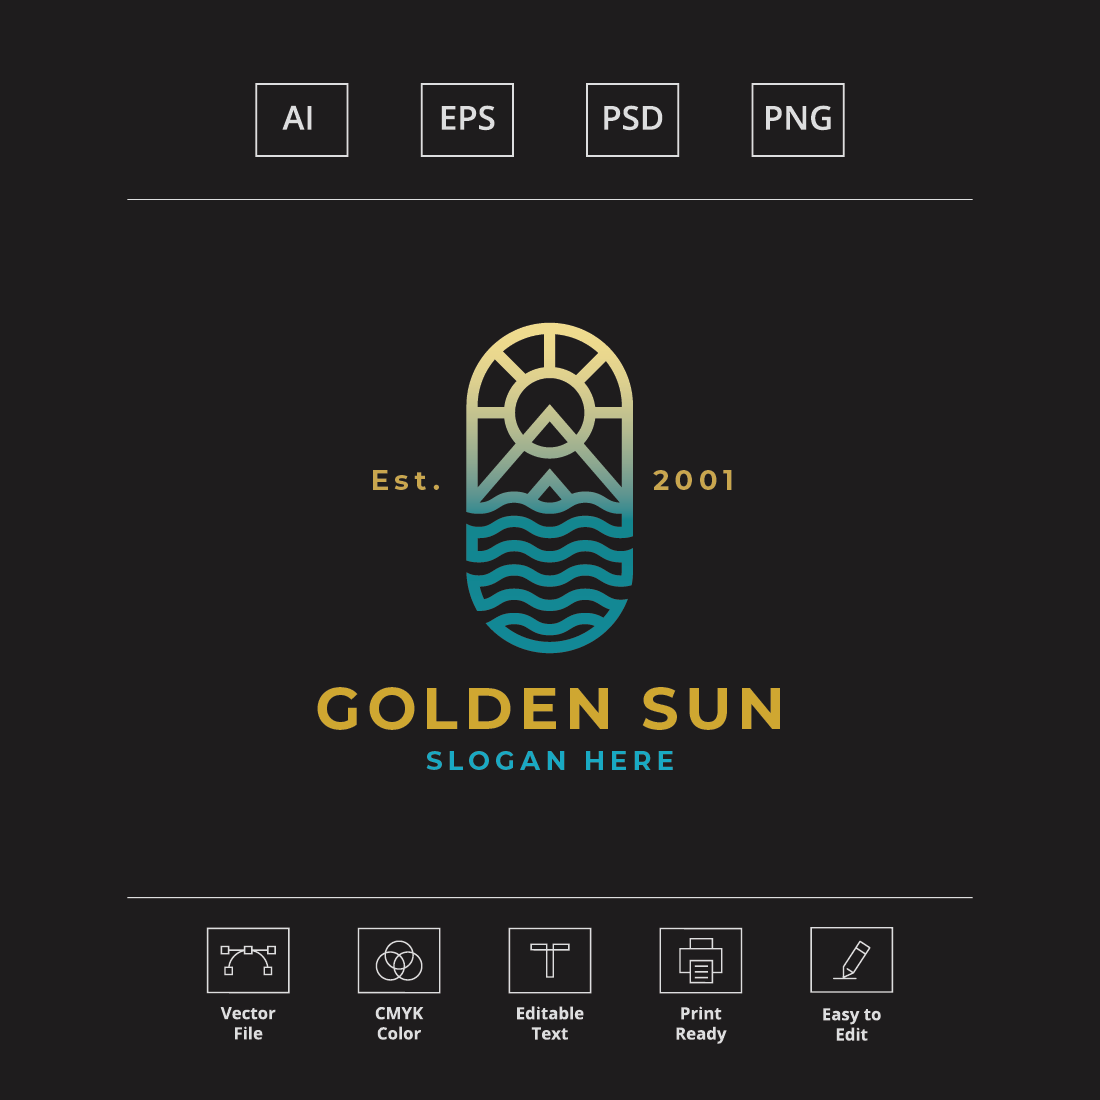 Golden Sun Travel Logo cover image.